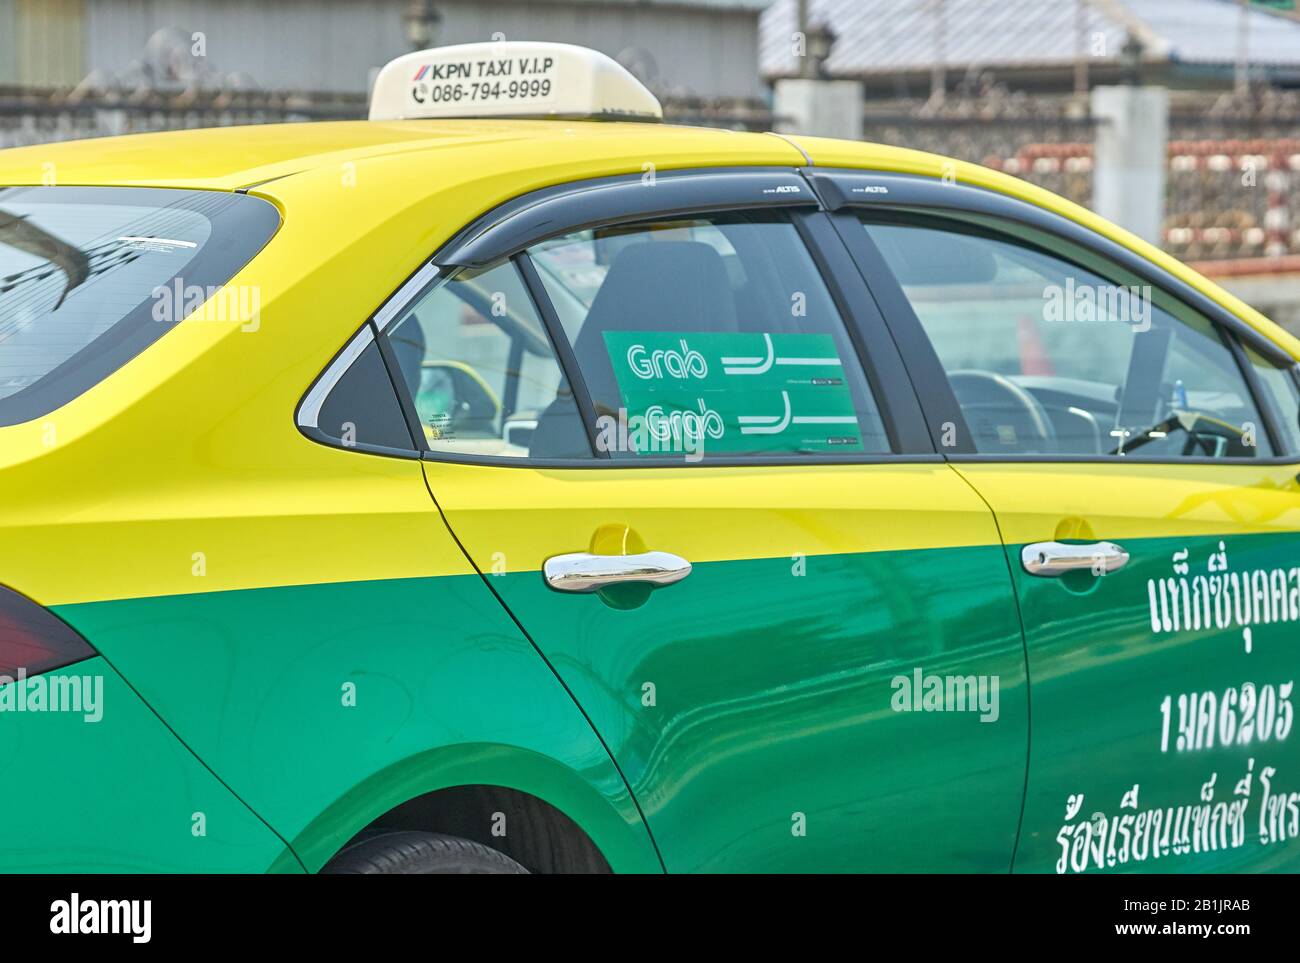 Un taxi Bangkok Grab servicio de coche, en colores verde y amarillo tradicional. Foto de stock